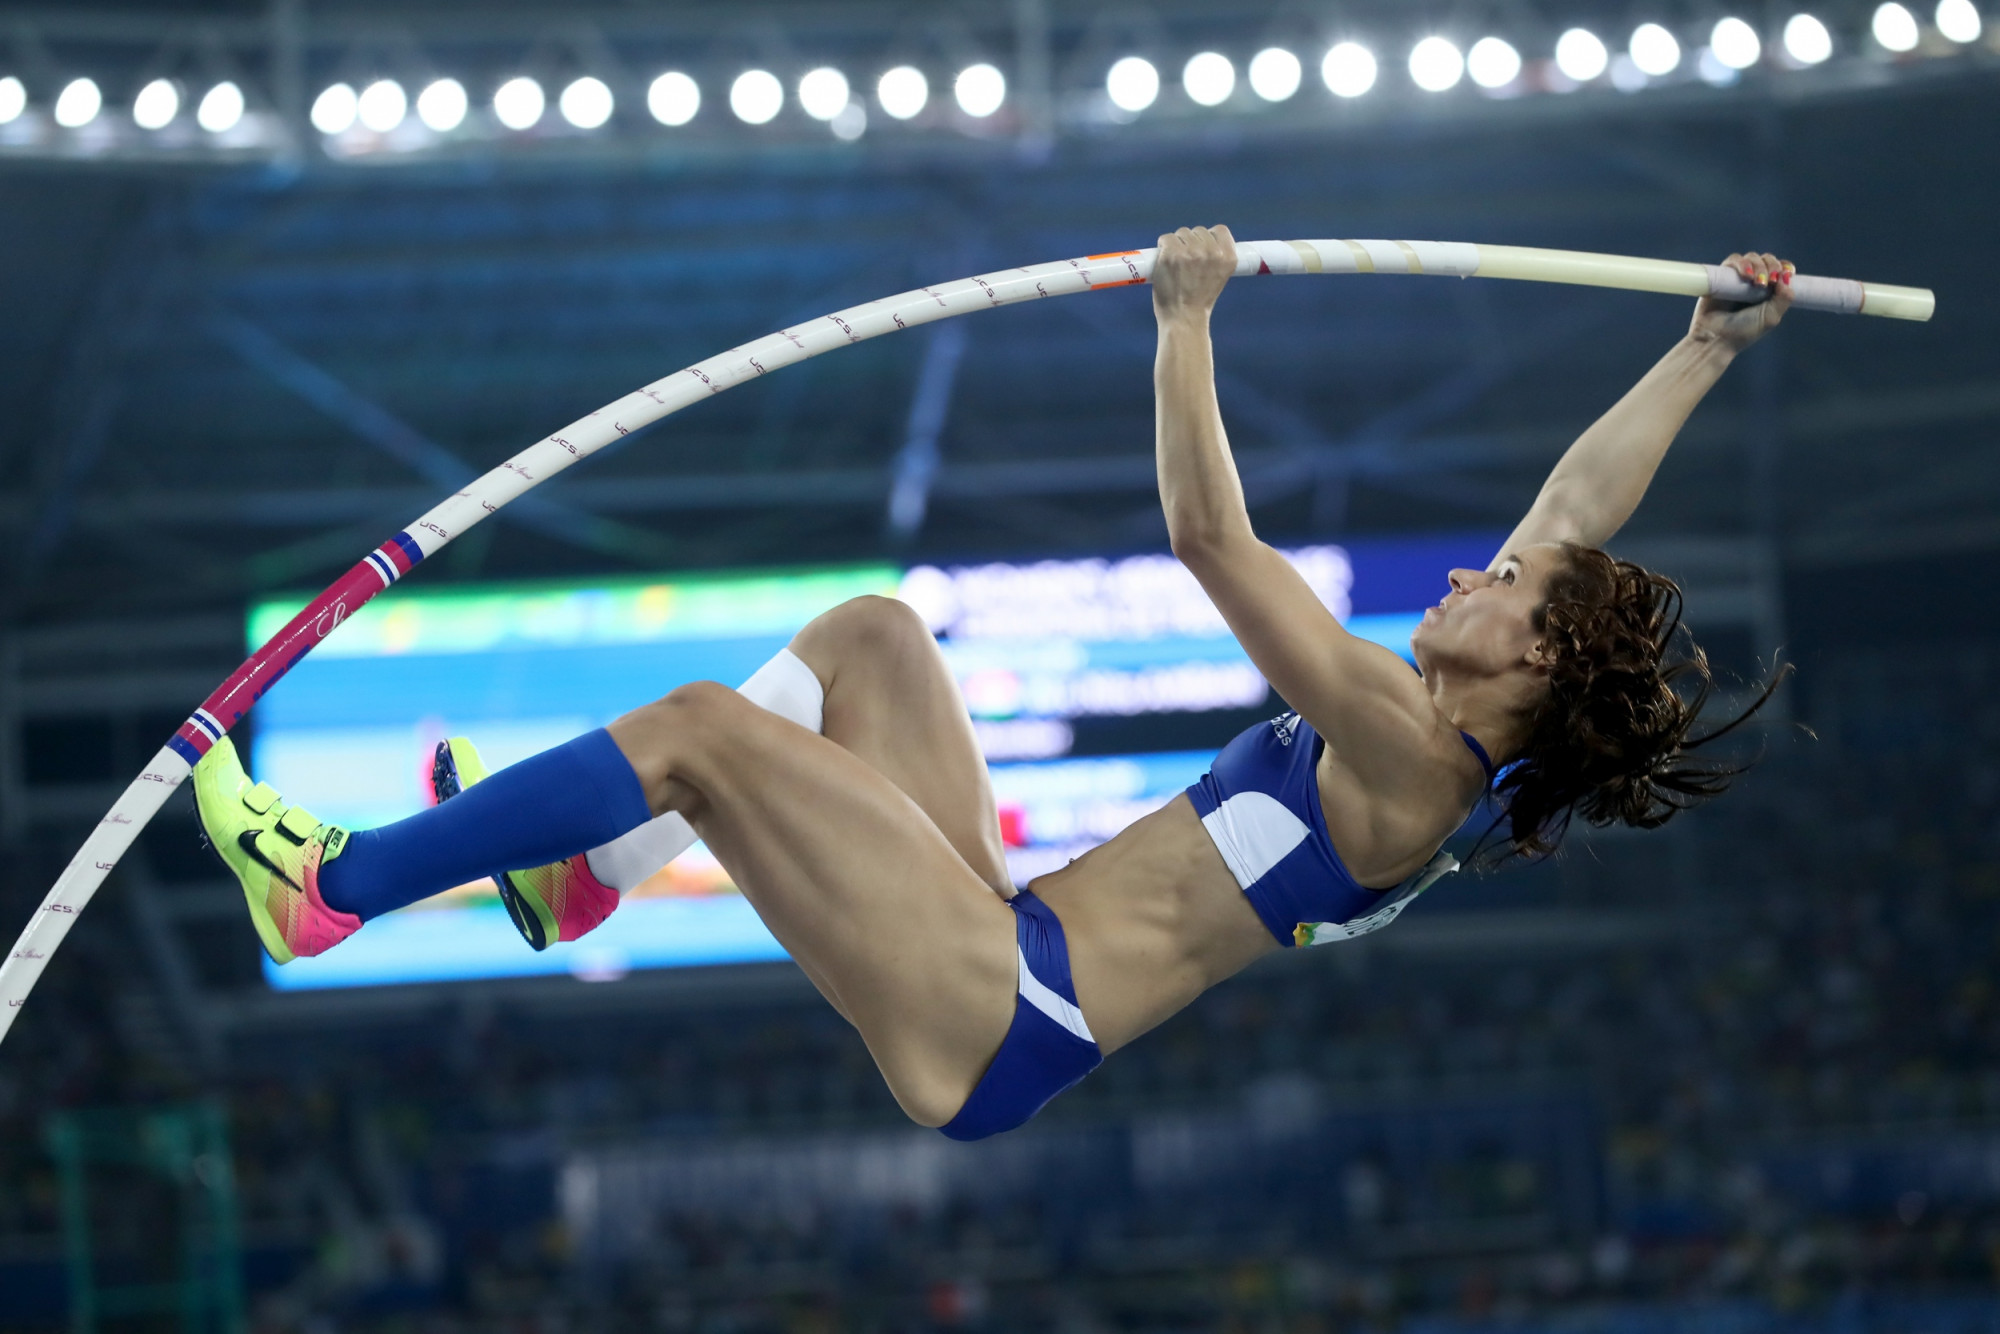 Με τέτοια προπόνηση η Κατερίνα Στεφανίδη έχει «τσαπώσει» από τώρα το χρυσό στους επόμενους Ολυμπιακούς, αν ποτέ γίνουν